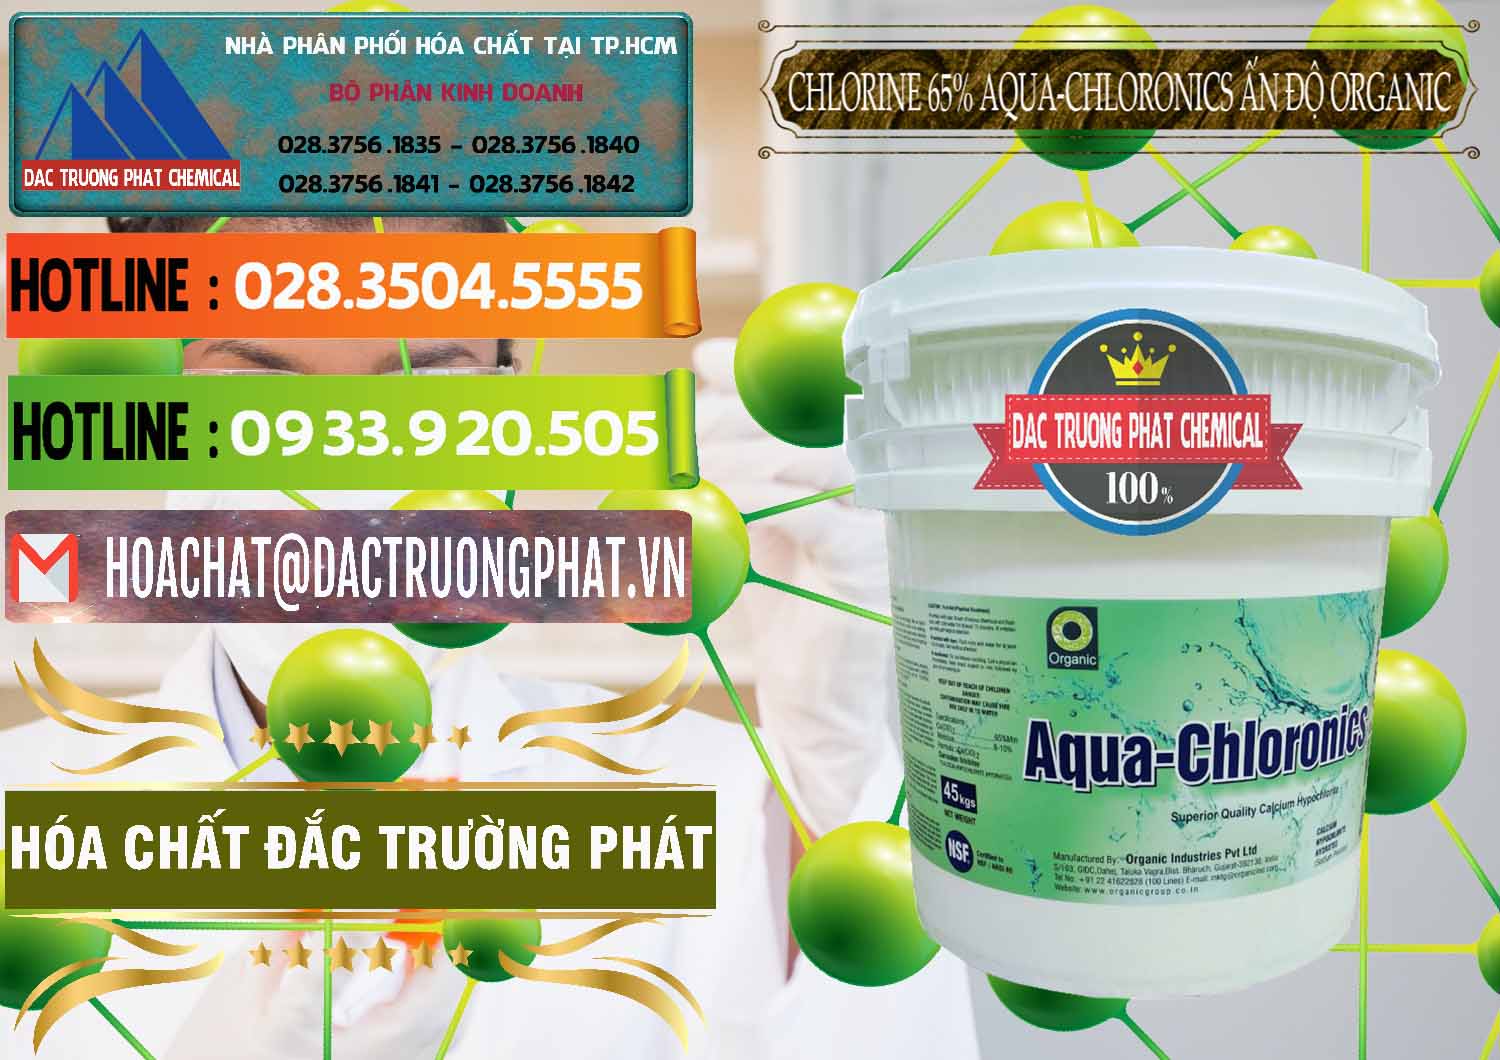 Đơn vị chuyên bán _ cung cấp Chlorine – Clorin 65% Aqua-Chloronics Ấn Độ Organic India - 0210 - Cty cung cấp - bán hóa chất tại TP.HCM - cungcaphoachat.com.vn